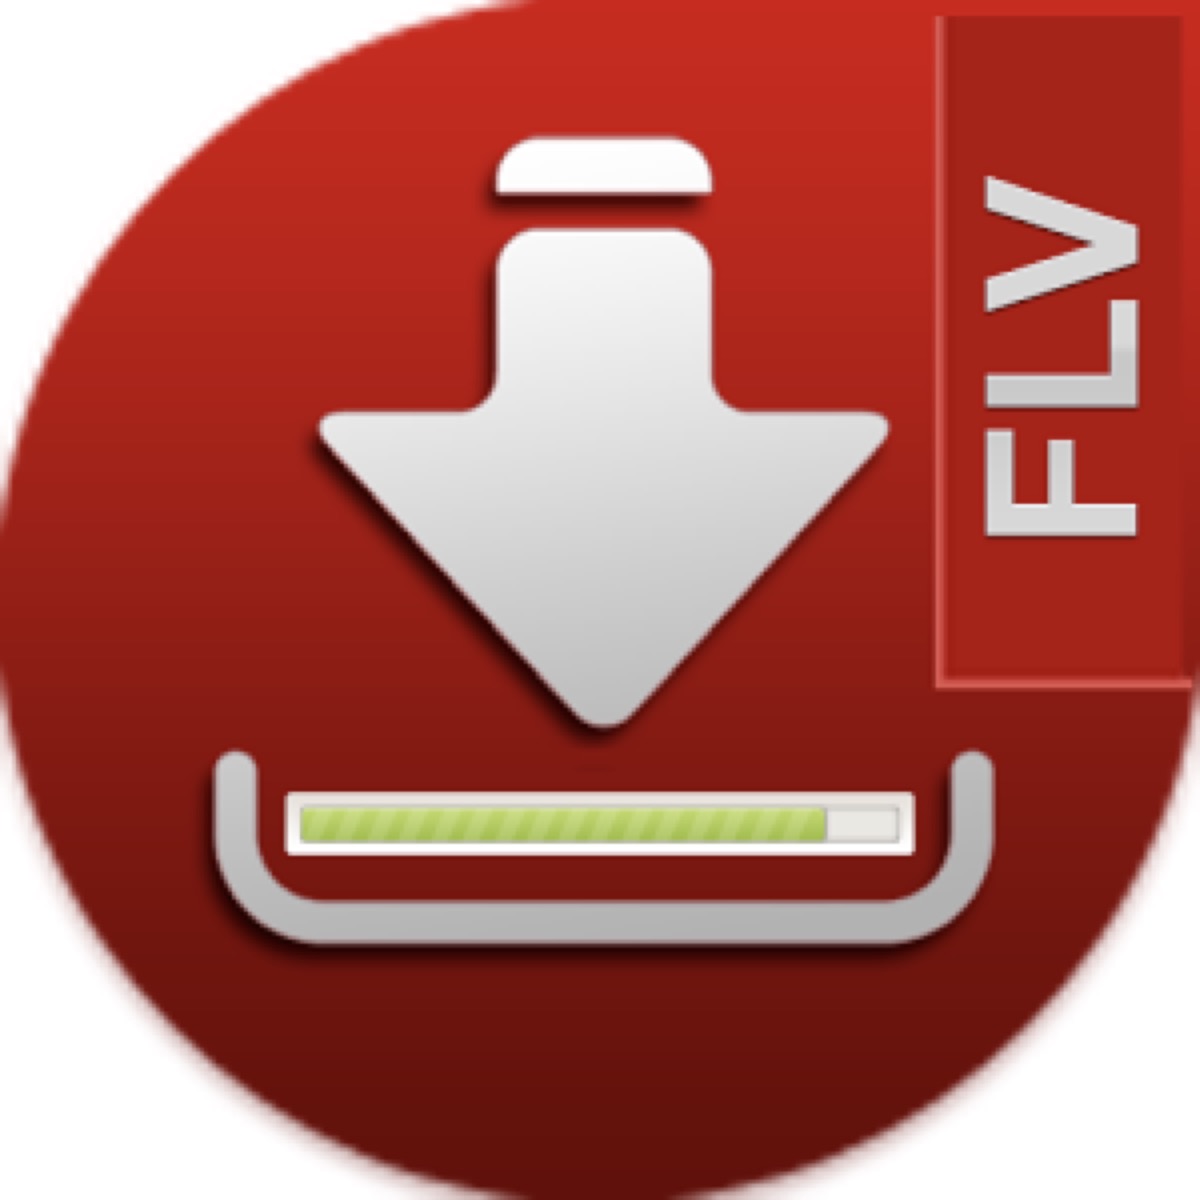 FLV Downloader